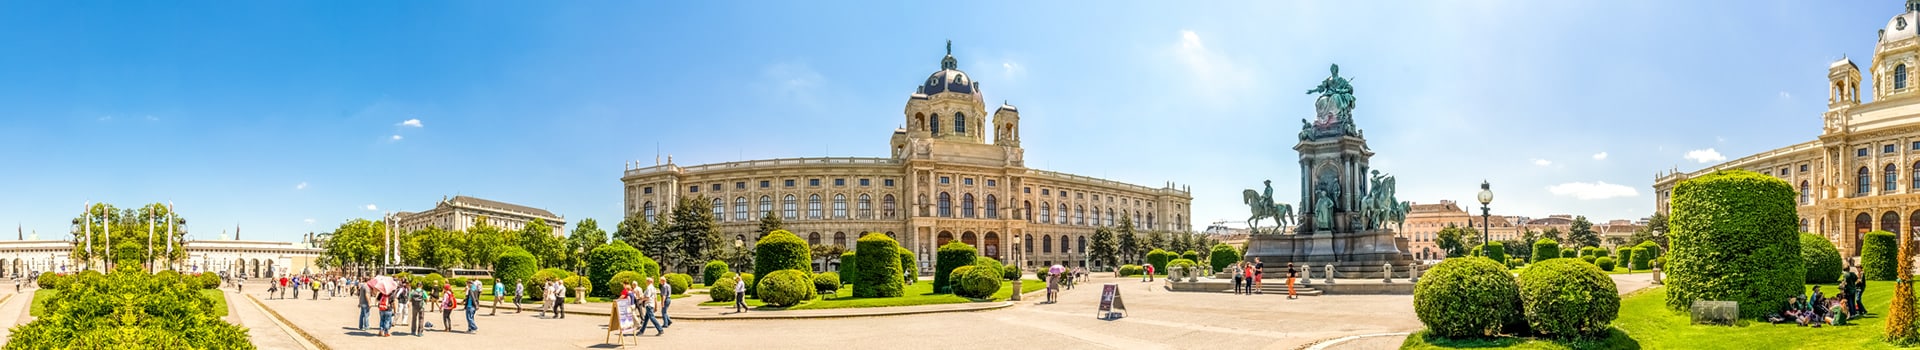 Bucarest - Vienna